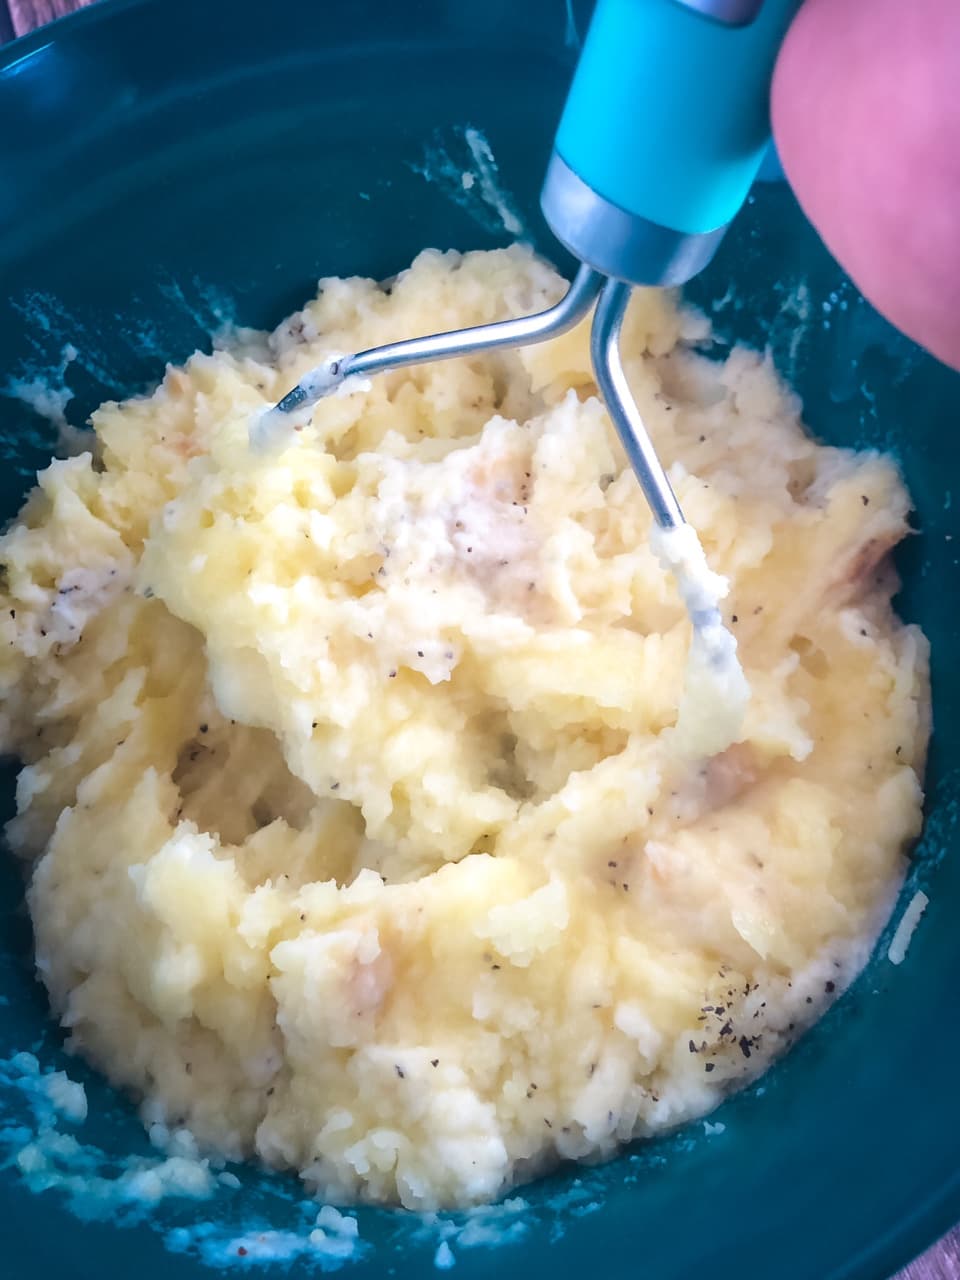 mashed potatoes with roasted garlic